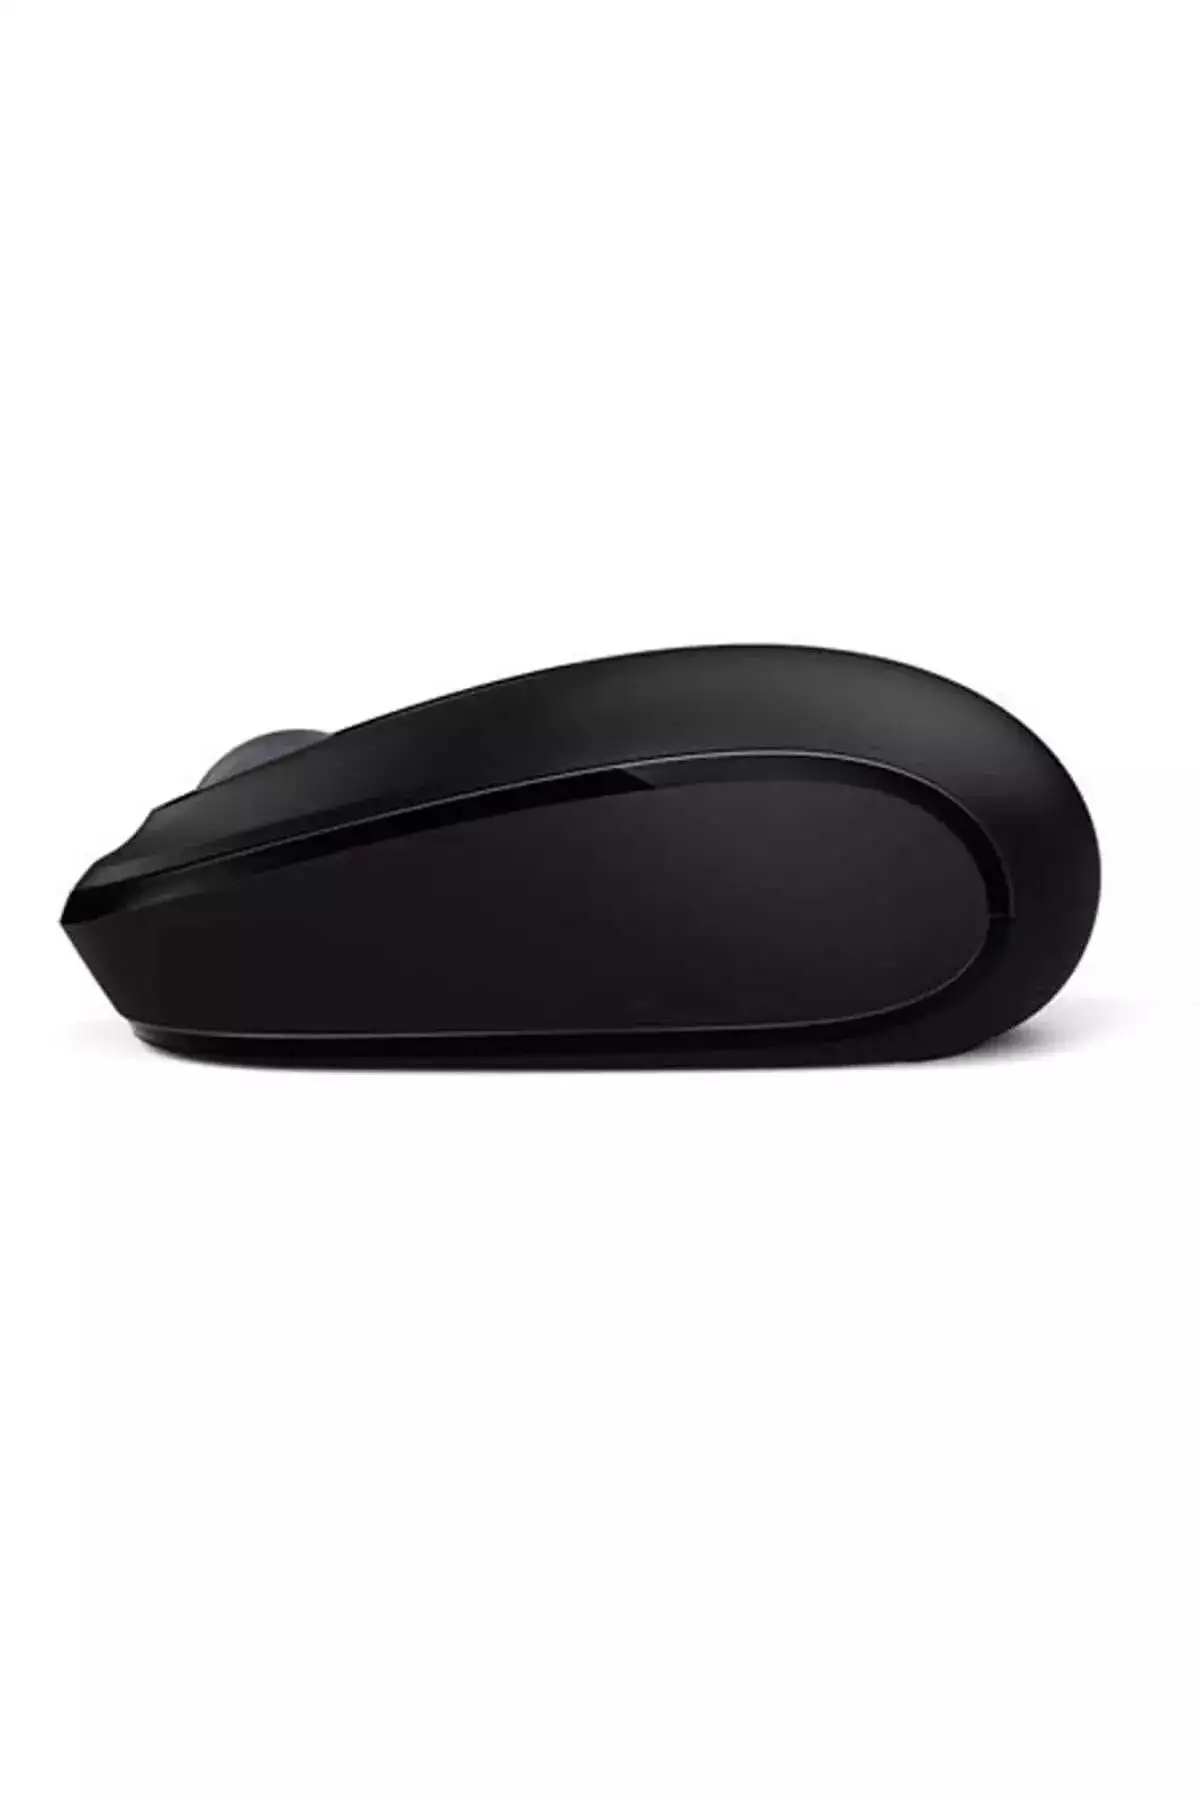 Microsoft Kablosuz Mouse 1850 Siyah U7Z-00003